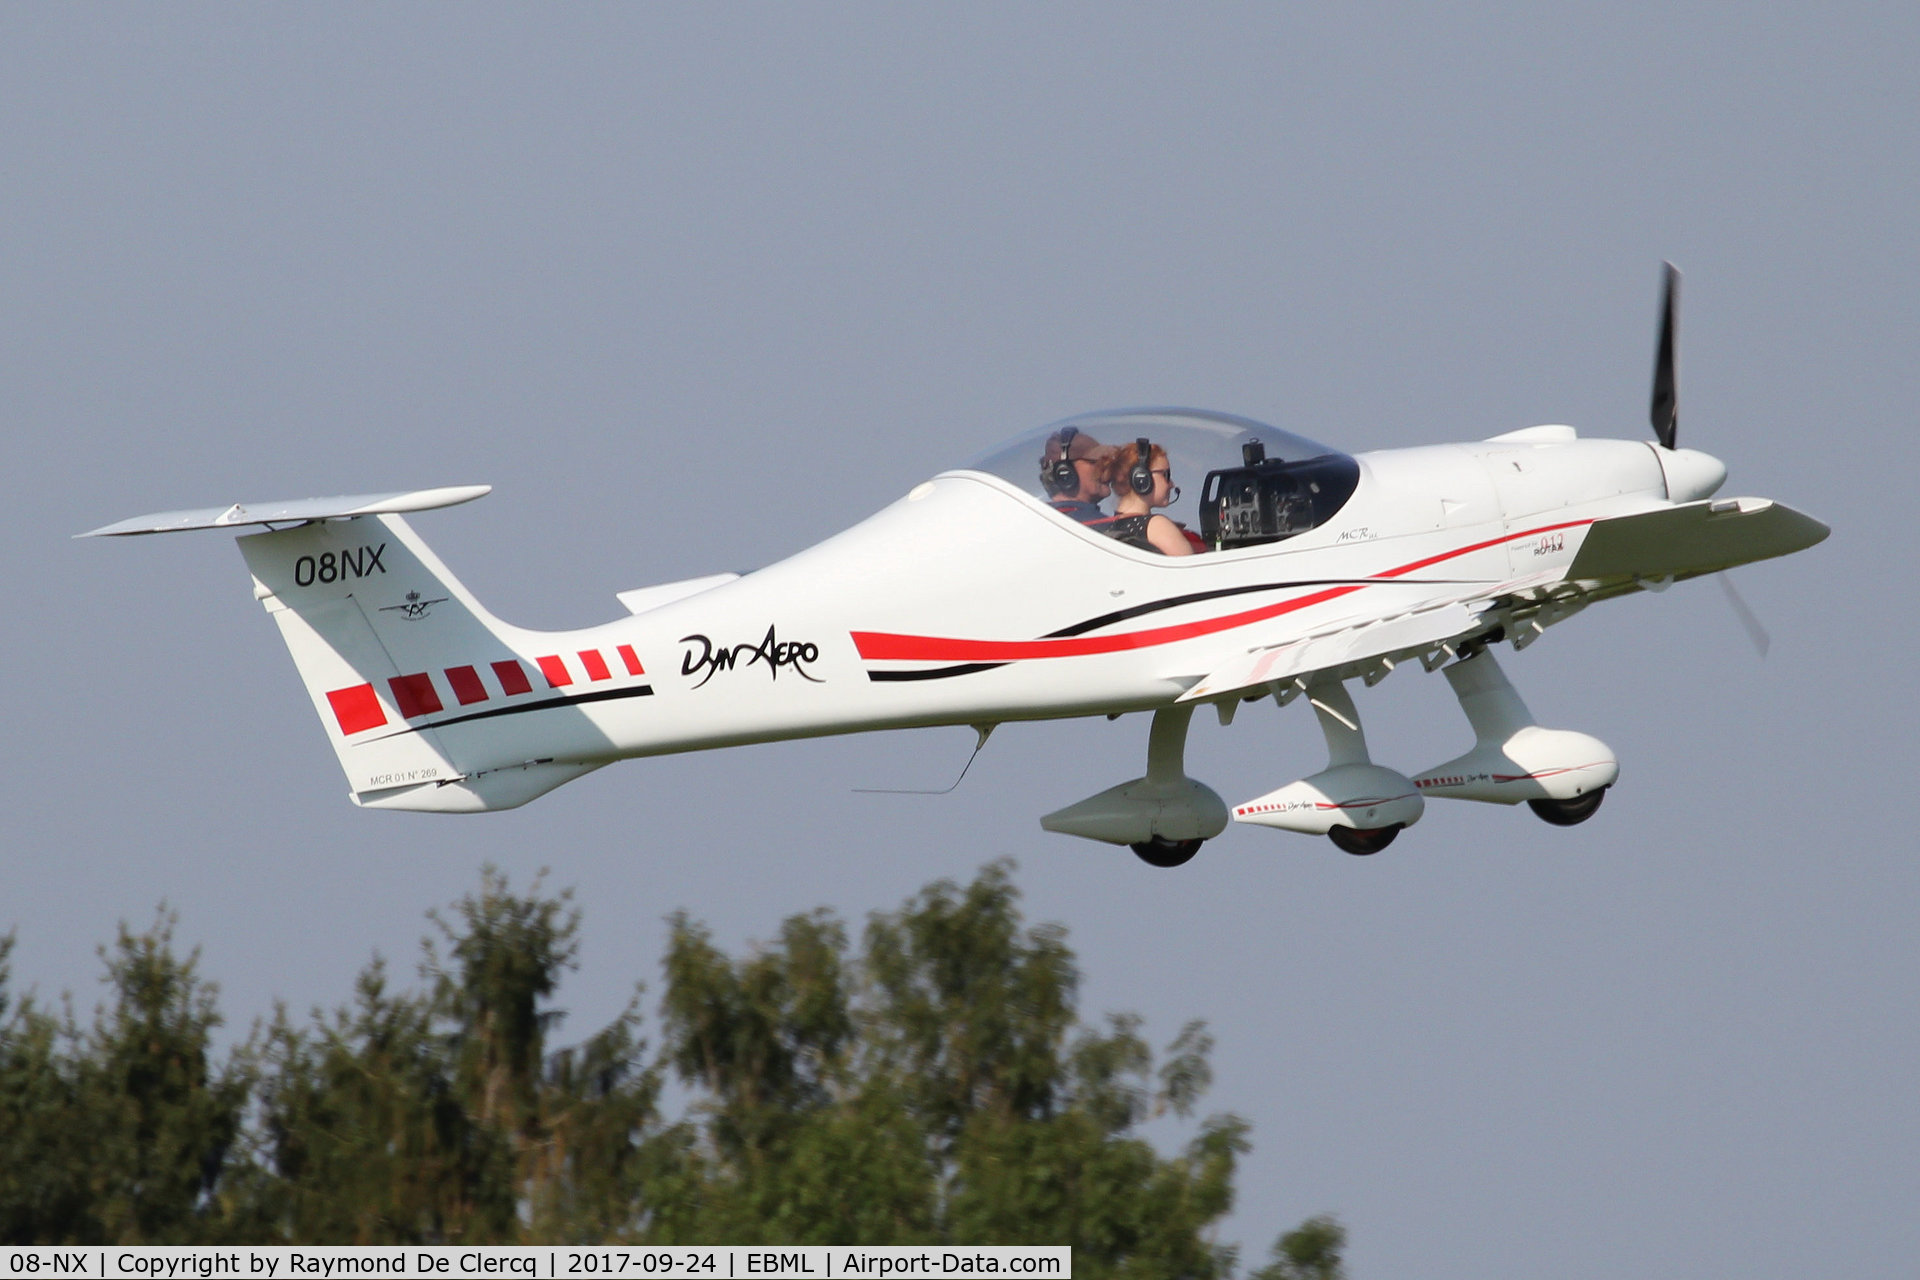 08-NX, 2003 Dyn'Aero MCR-01 Banbi C/N 269, At Maillen.